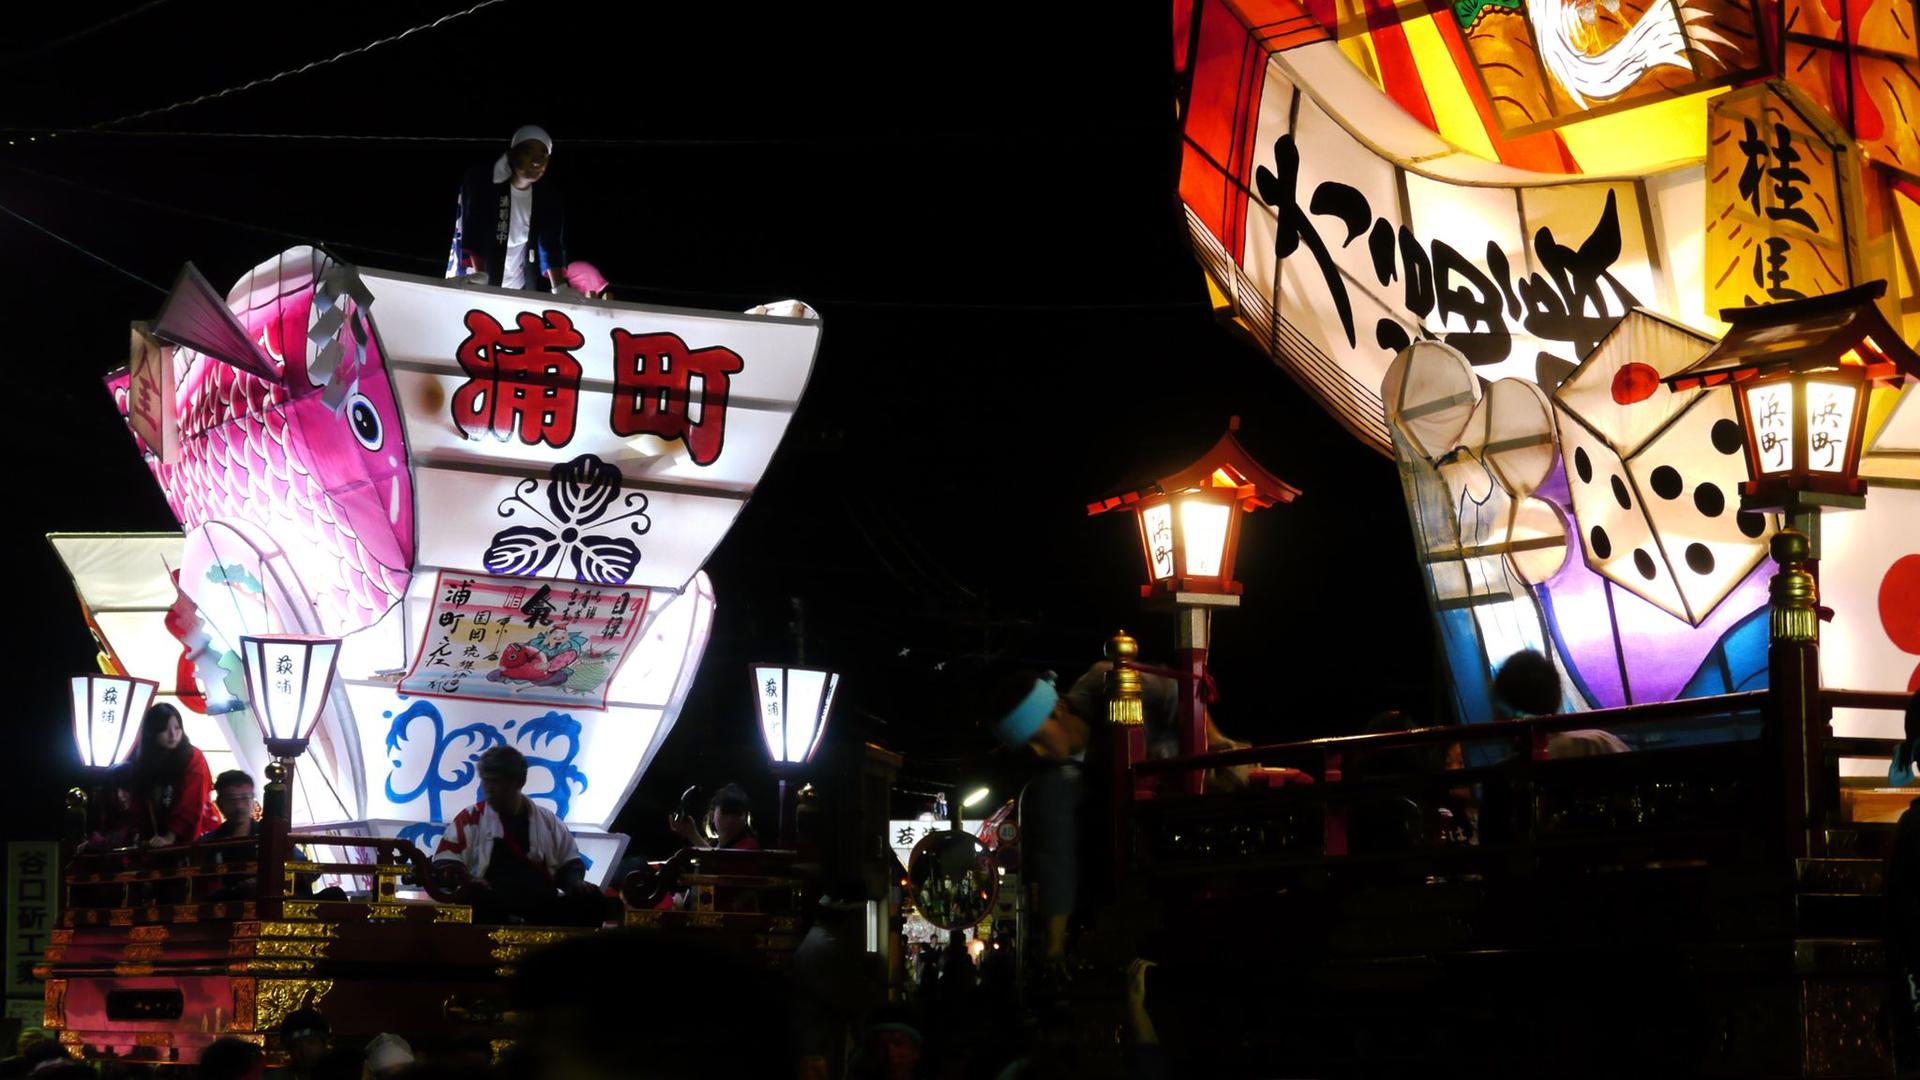 Iwase Hikiyama Festival (The Fighting Floats Festival)